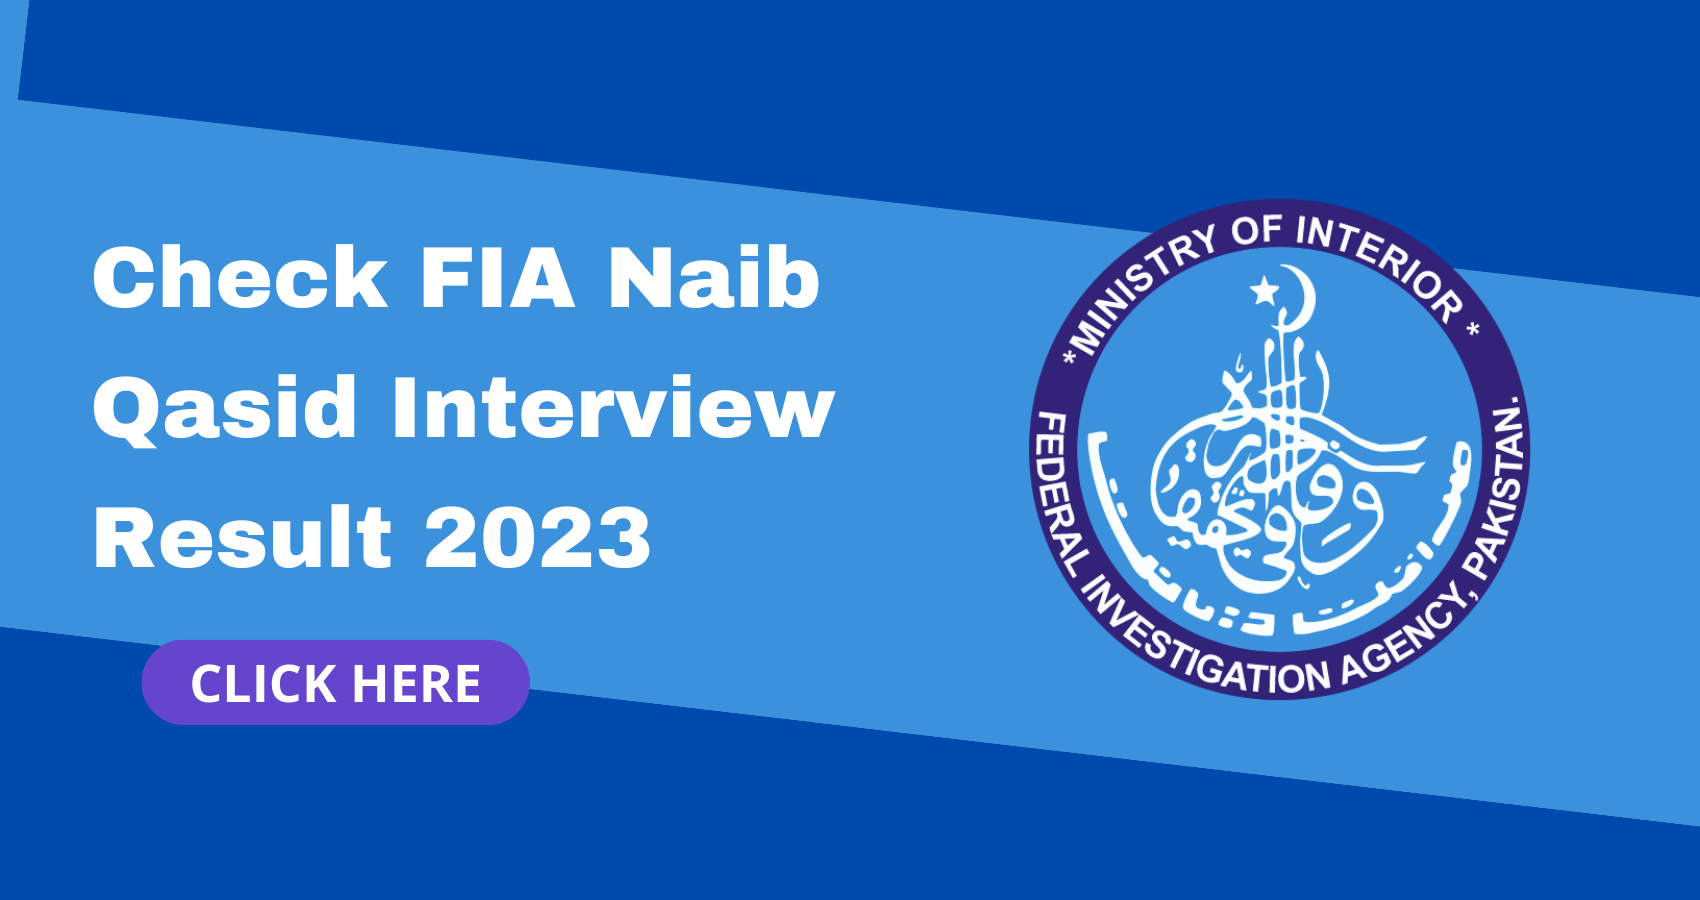 Check FIA Naib Qasid Interview Result